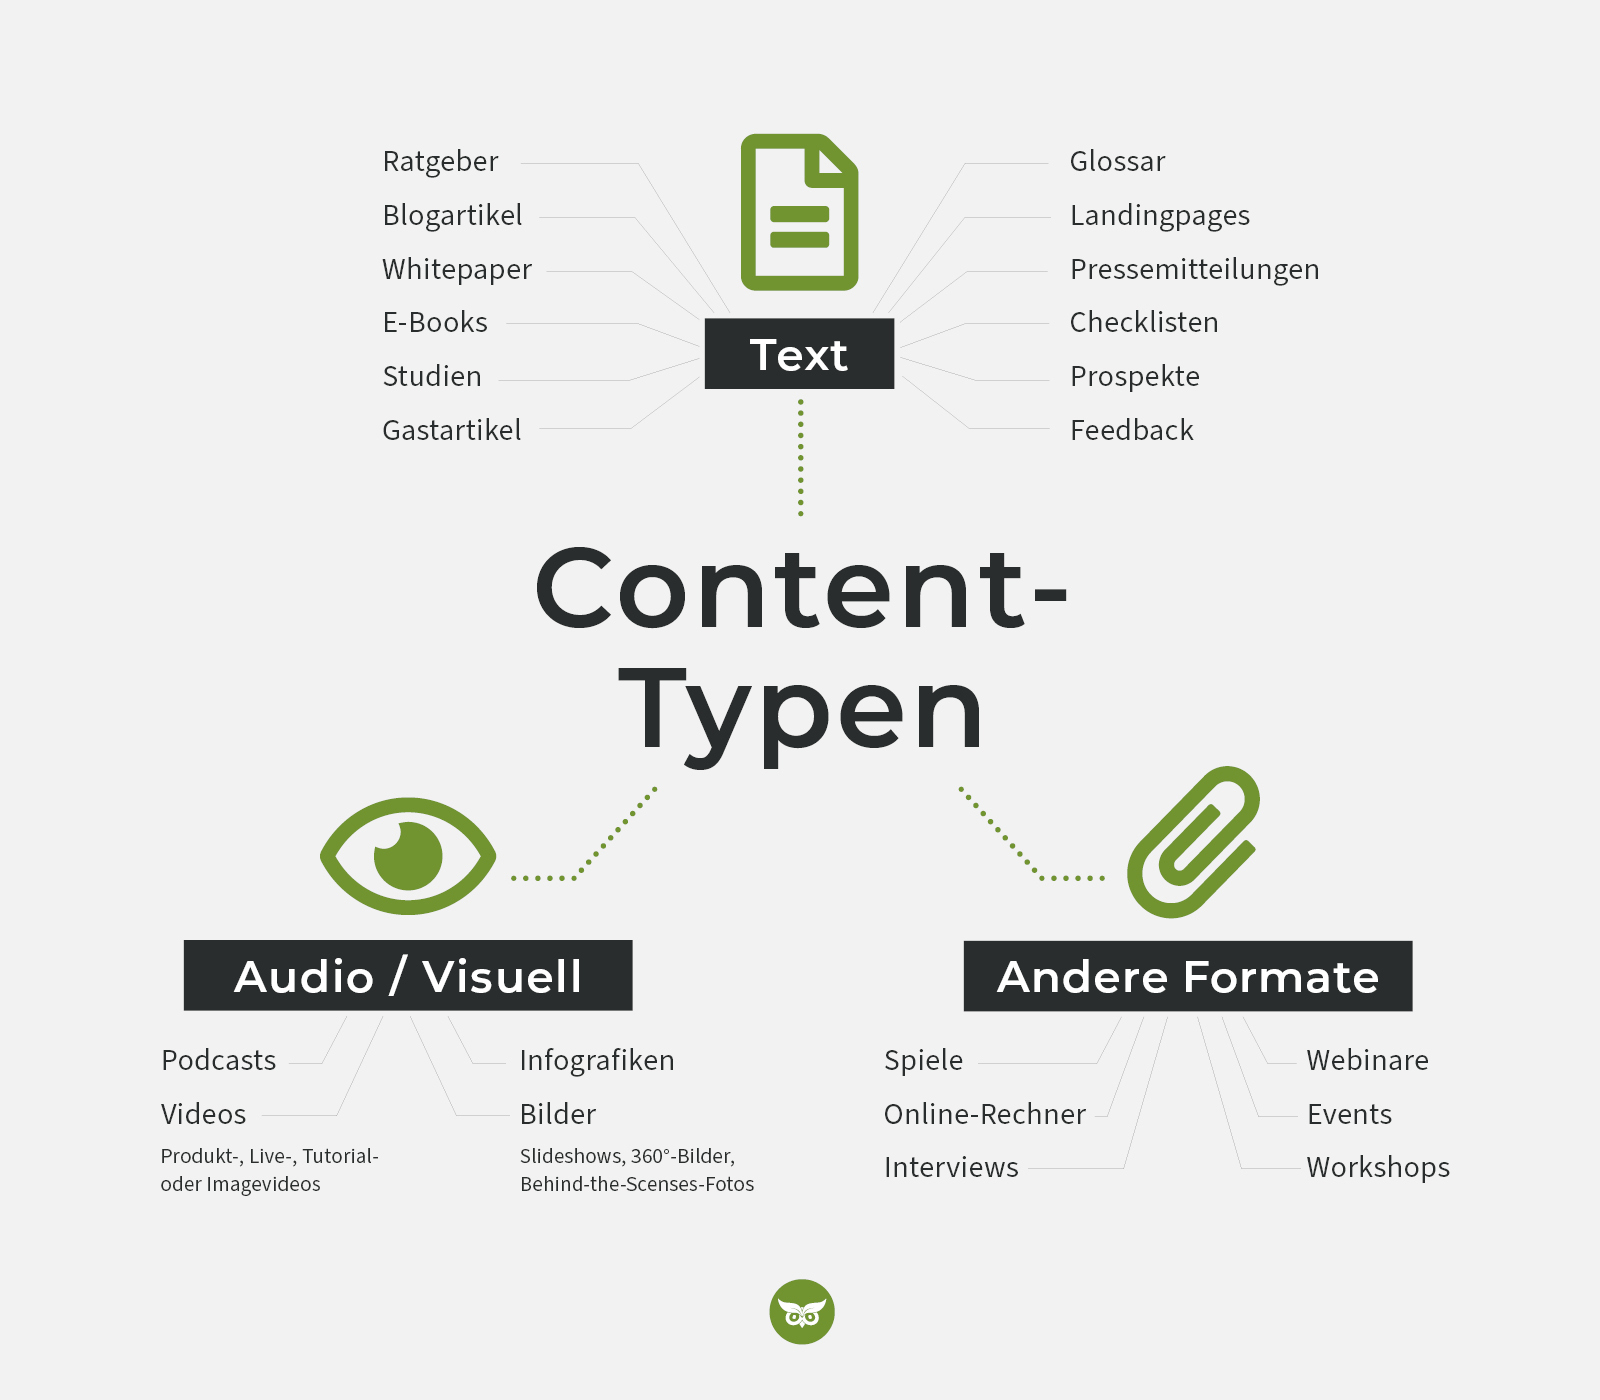 Content-Typen